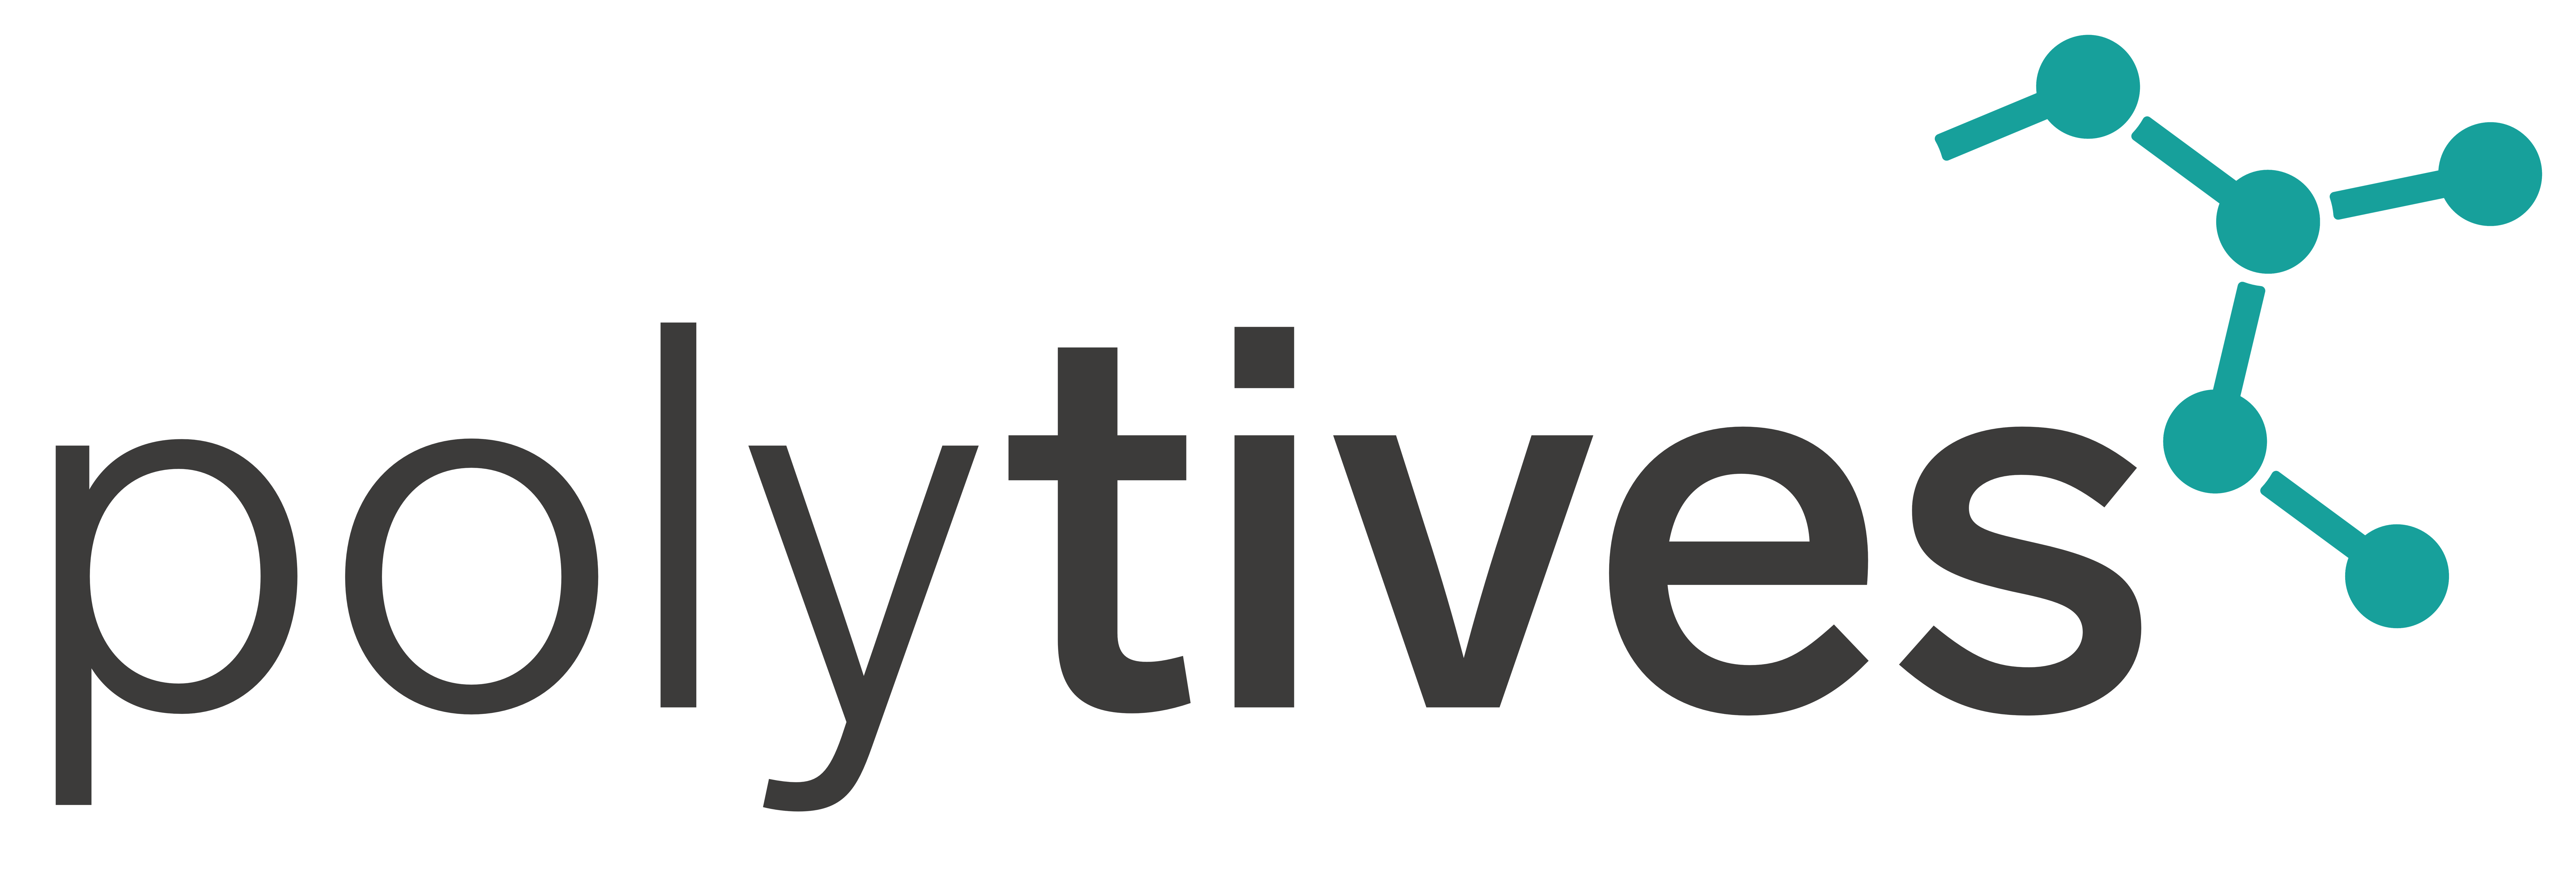 Polytives GmbH